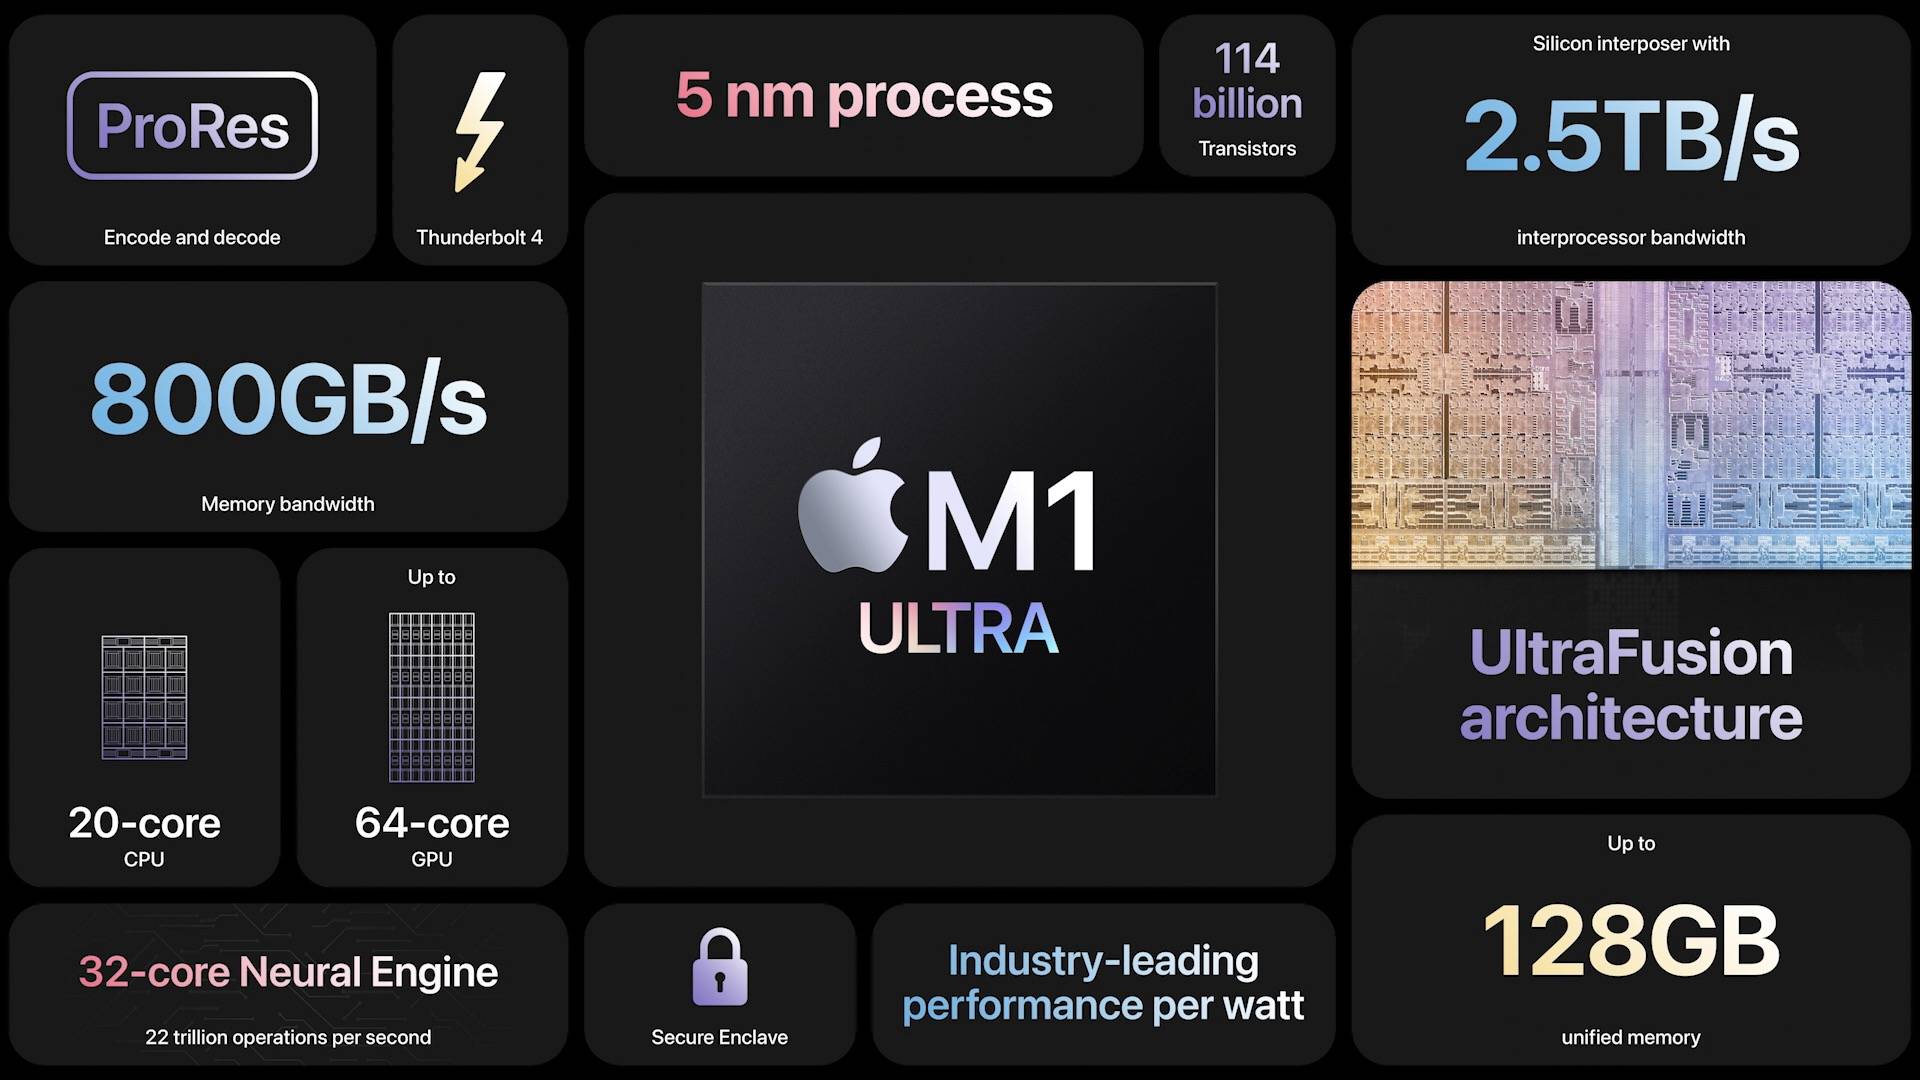 e9e5ad3c 32aa 458d 8cf7 fe7def896802 - Il riassunto completo della conferenza di Apple: l’iPhone 5G più economico non è il protagonista, e il chip “Wang fried” M1 Ultra è così forte che si sente solo